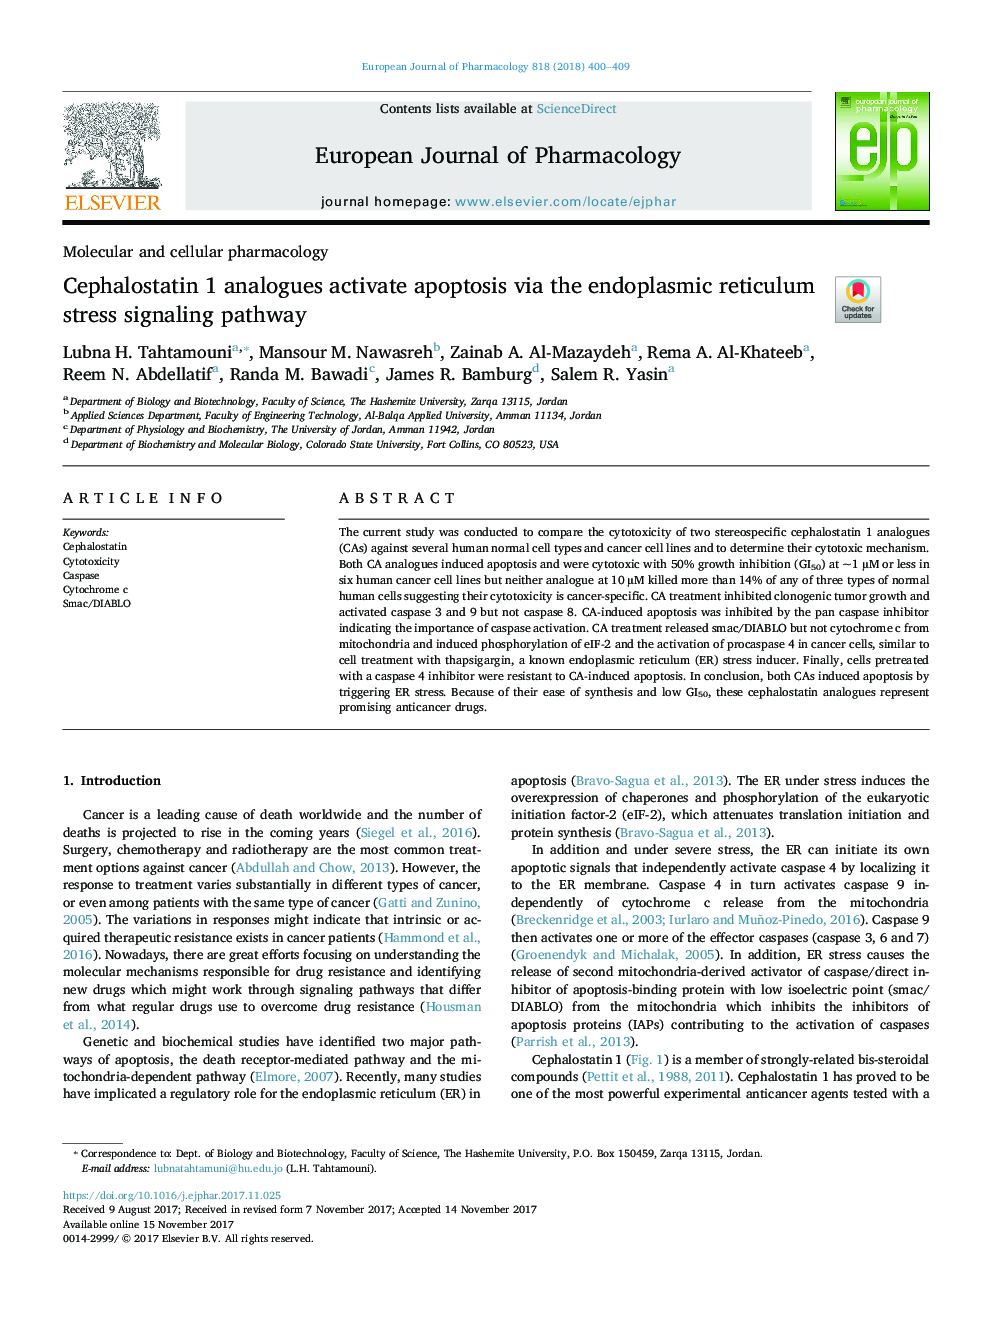 آنالوگهای سفالستاتین 1 آپوپتوز را از طریق مسیر سیگنالینگ تنش رتیکولوم آندوپلاسمی 